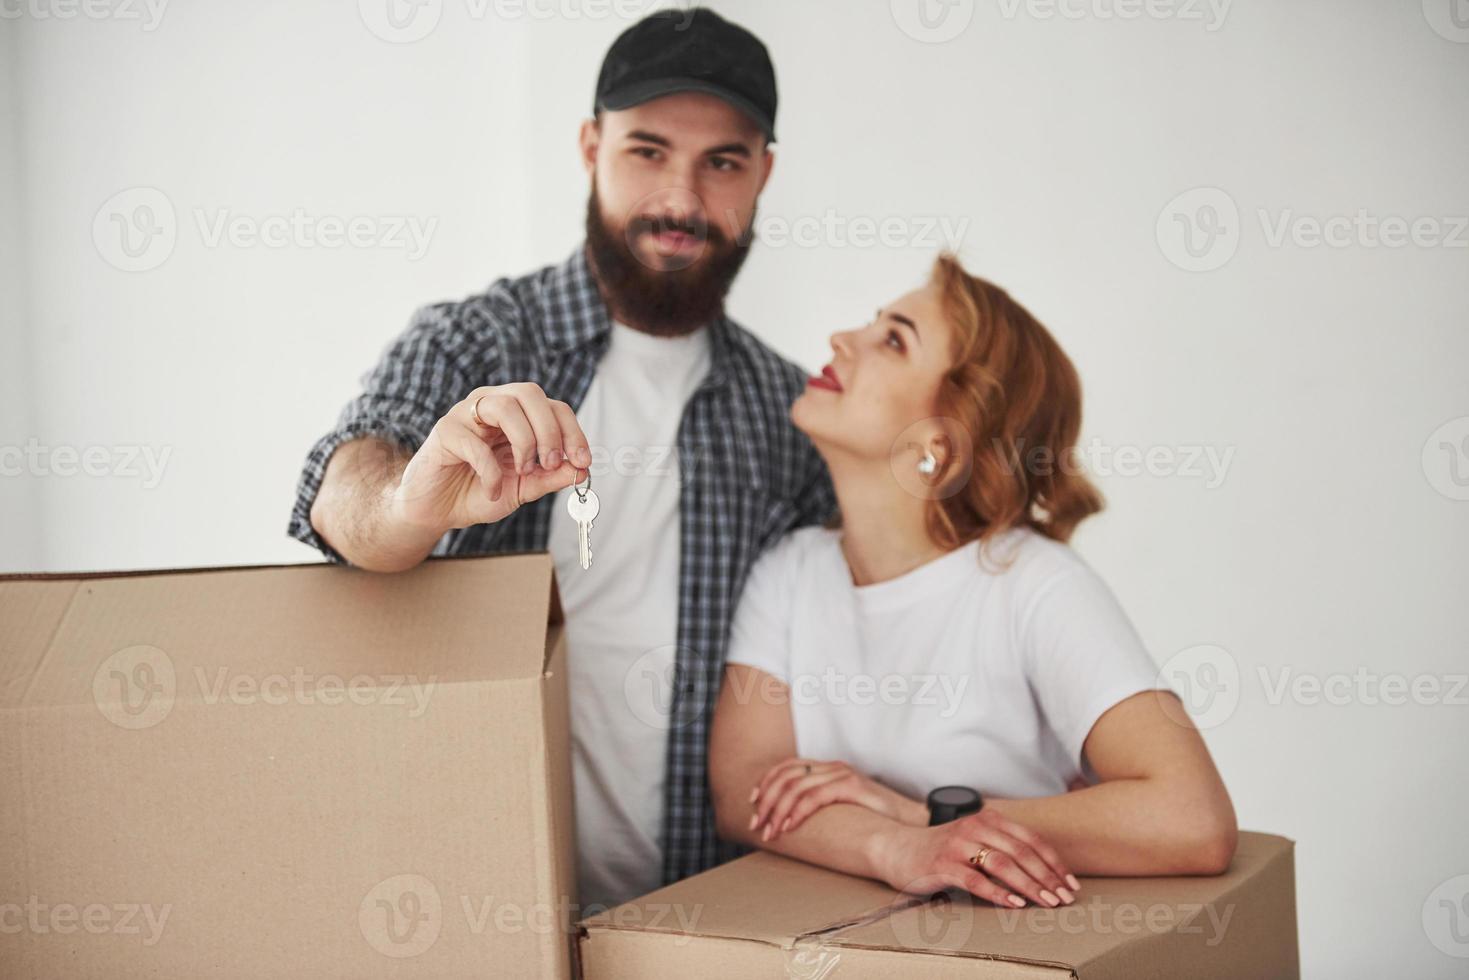 föreställning om att flytta. lyckligt par tillsammans i sitt nya hus foto